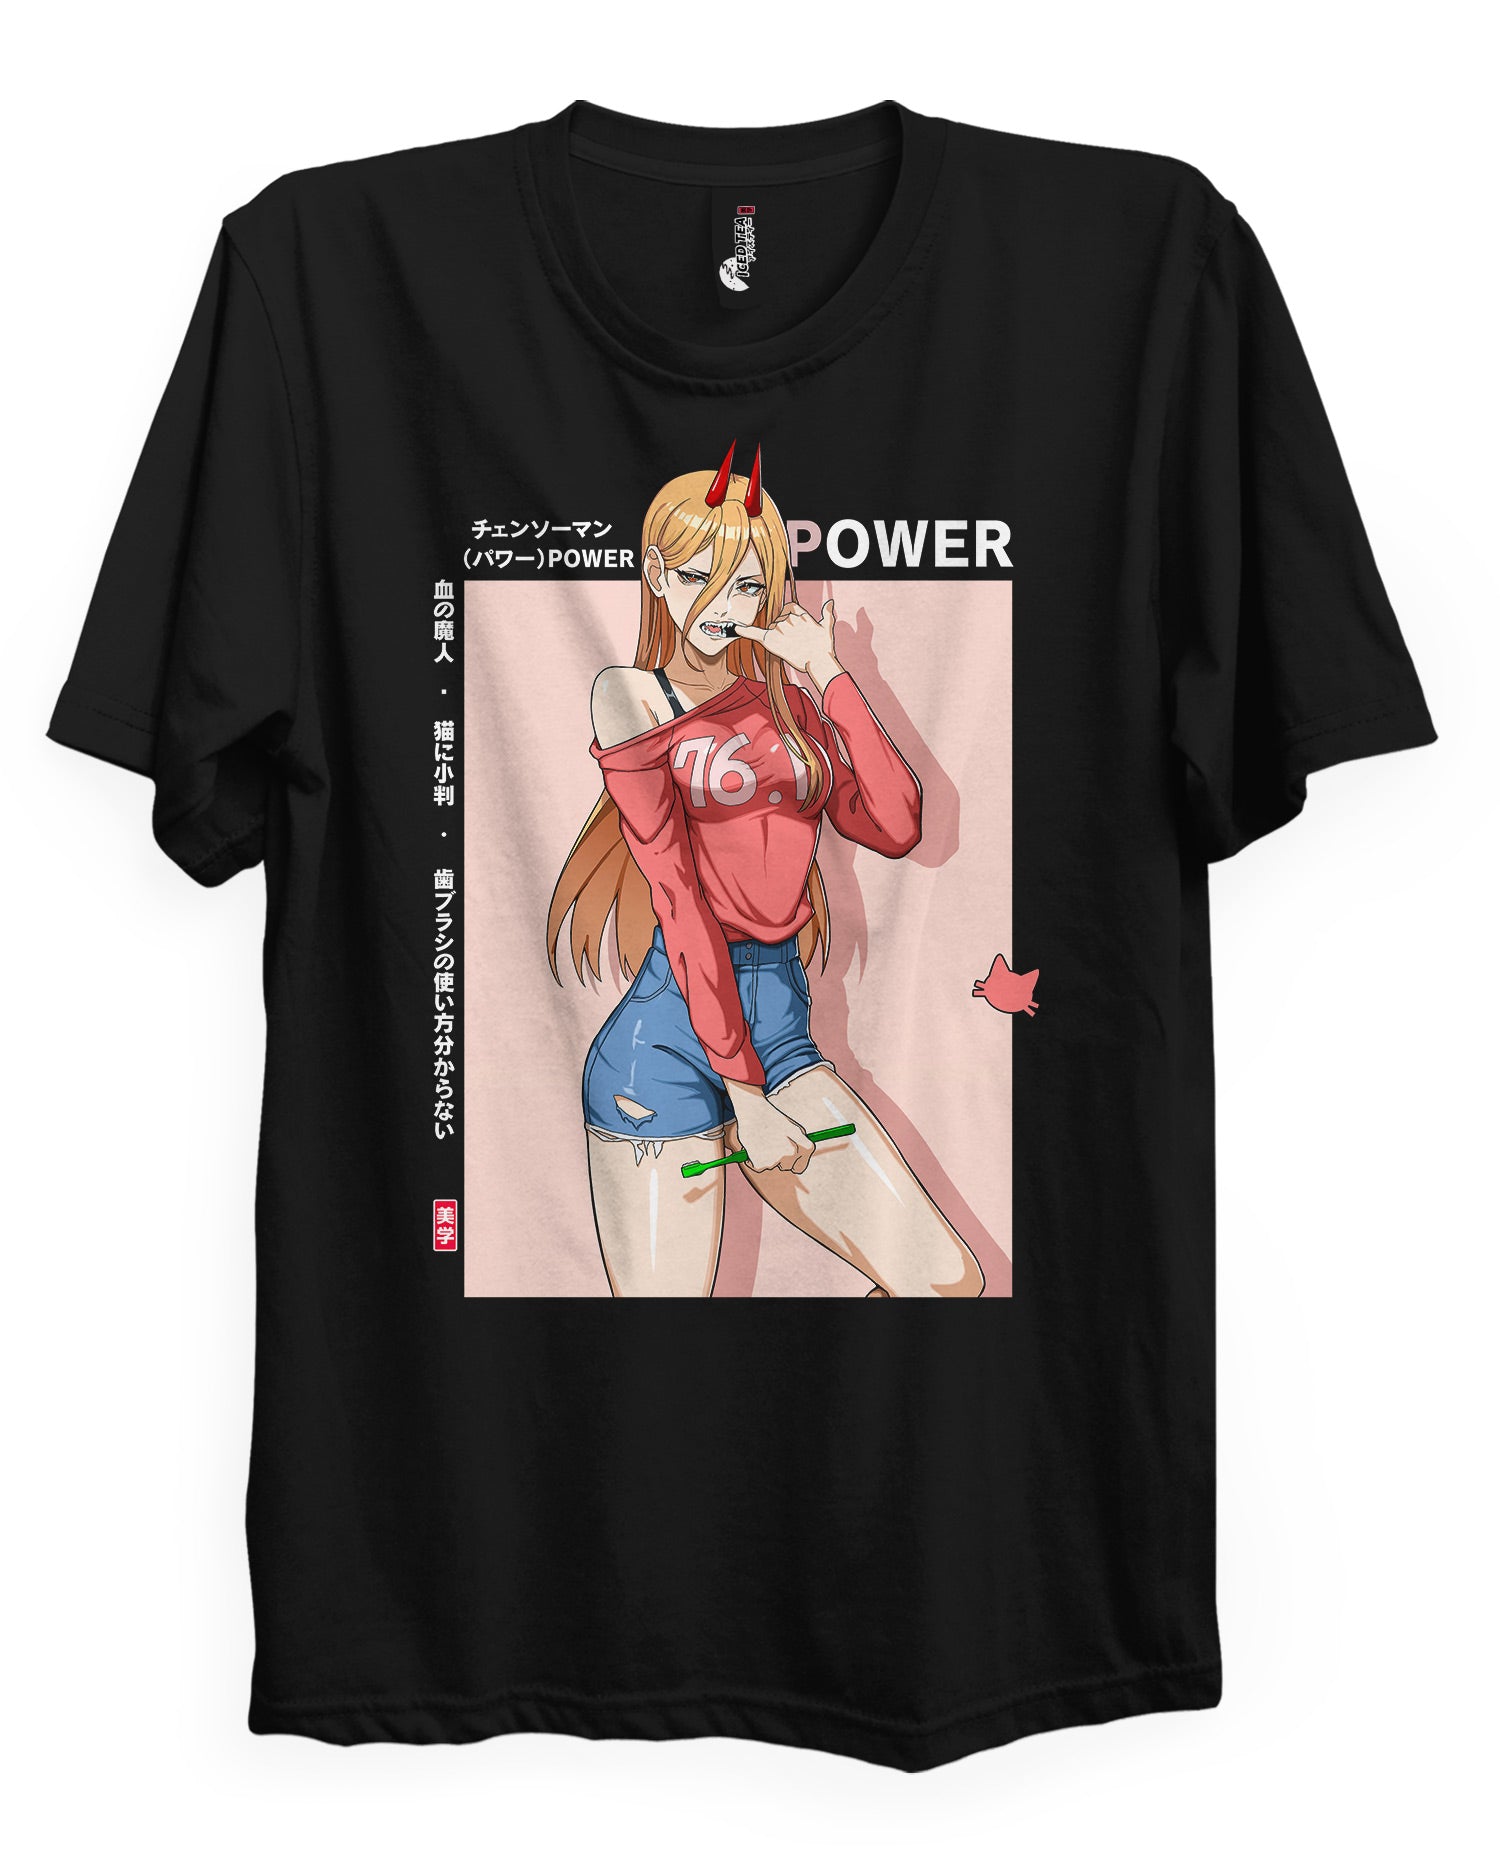 Power (Toothbrush) - T-Shirt